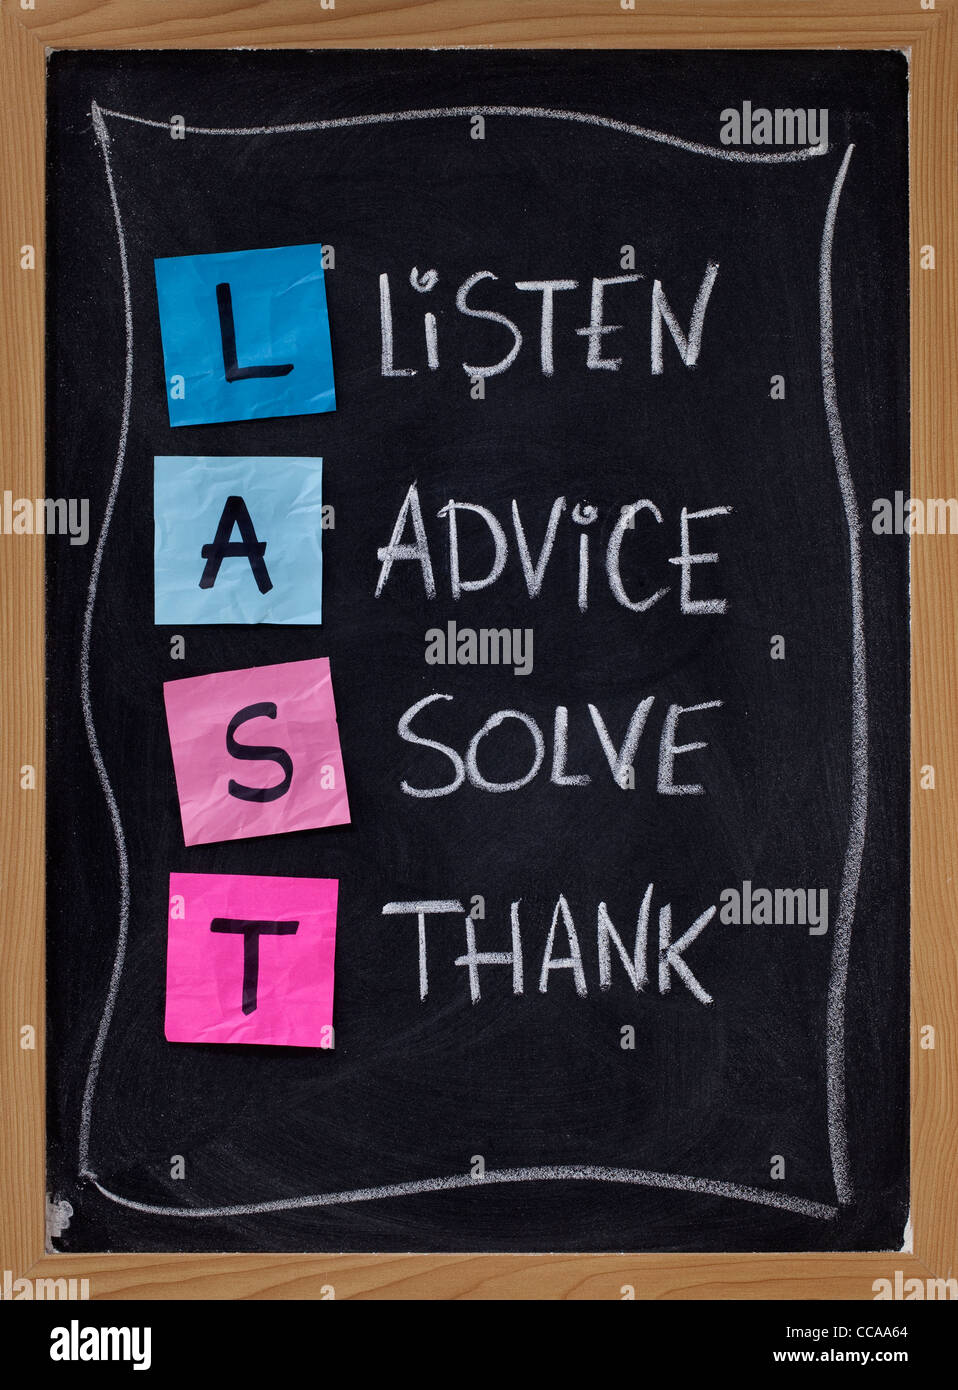 LETZTE (hören, Beratung, lösen, danke!)-Abkürzung für Training-Kunden-Service und Bearbeitung von Beschwerden. Blackboard Stockfoto